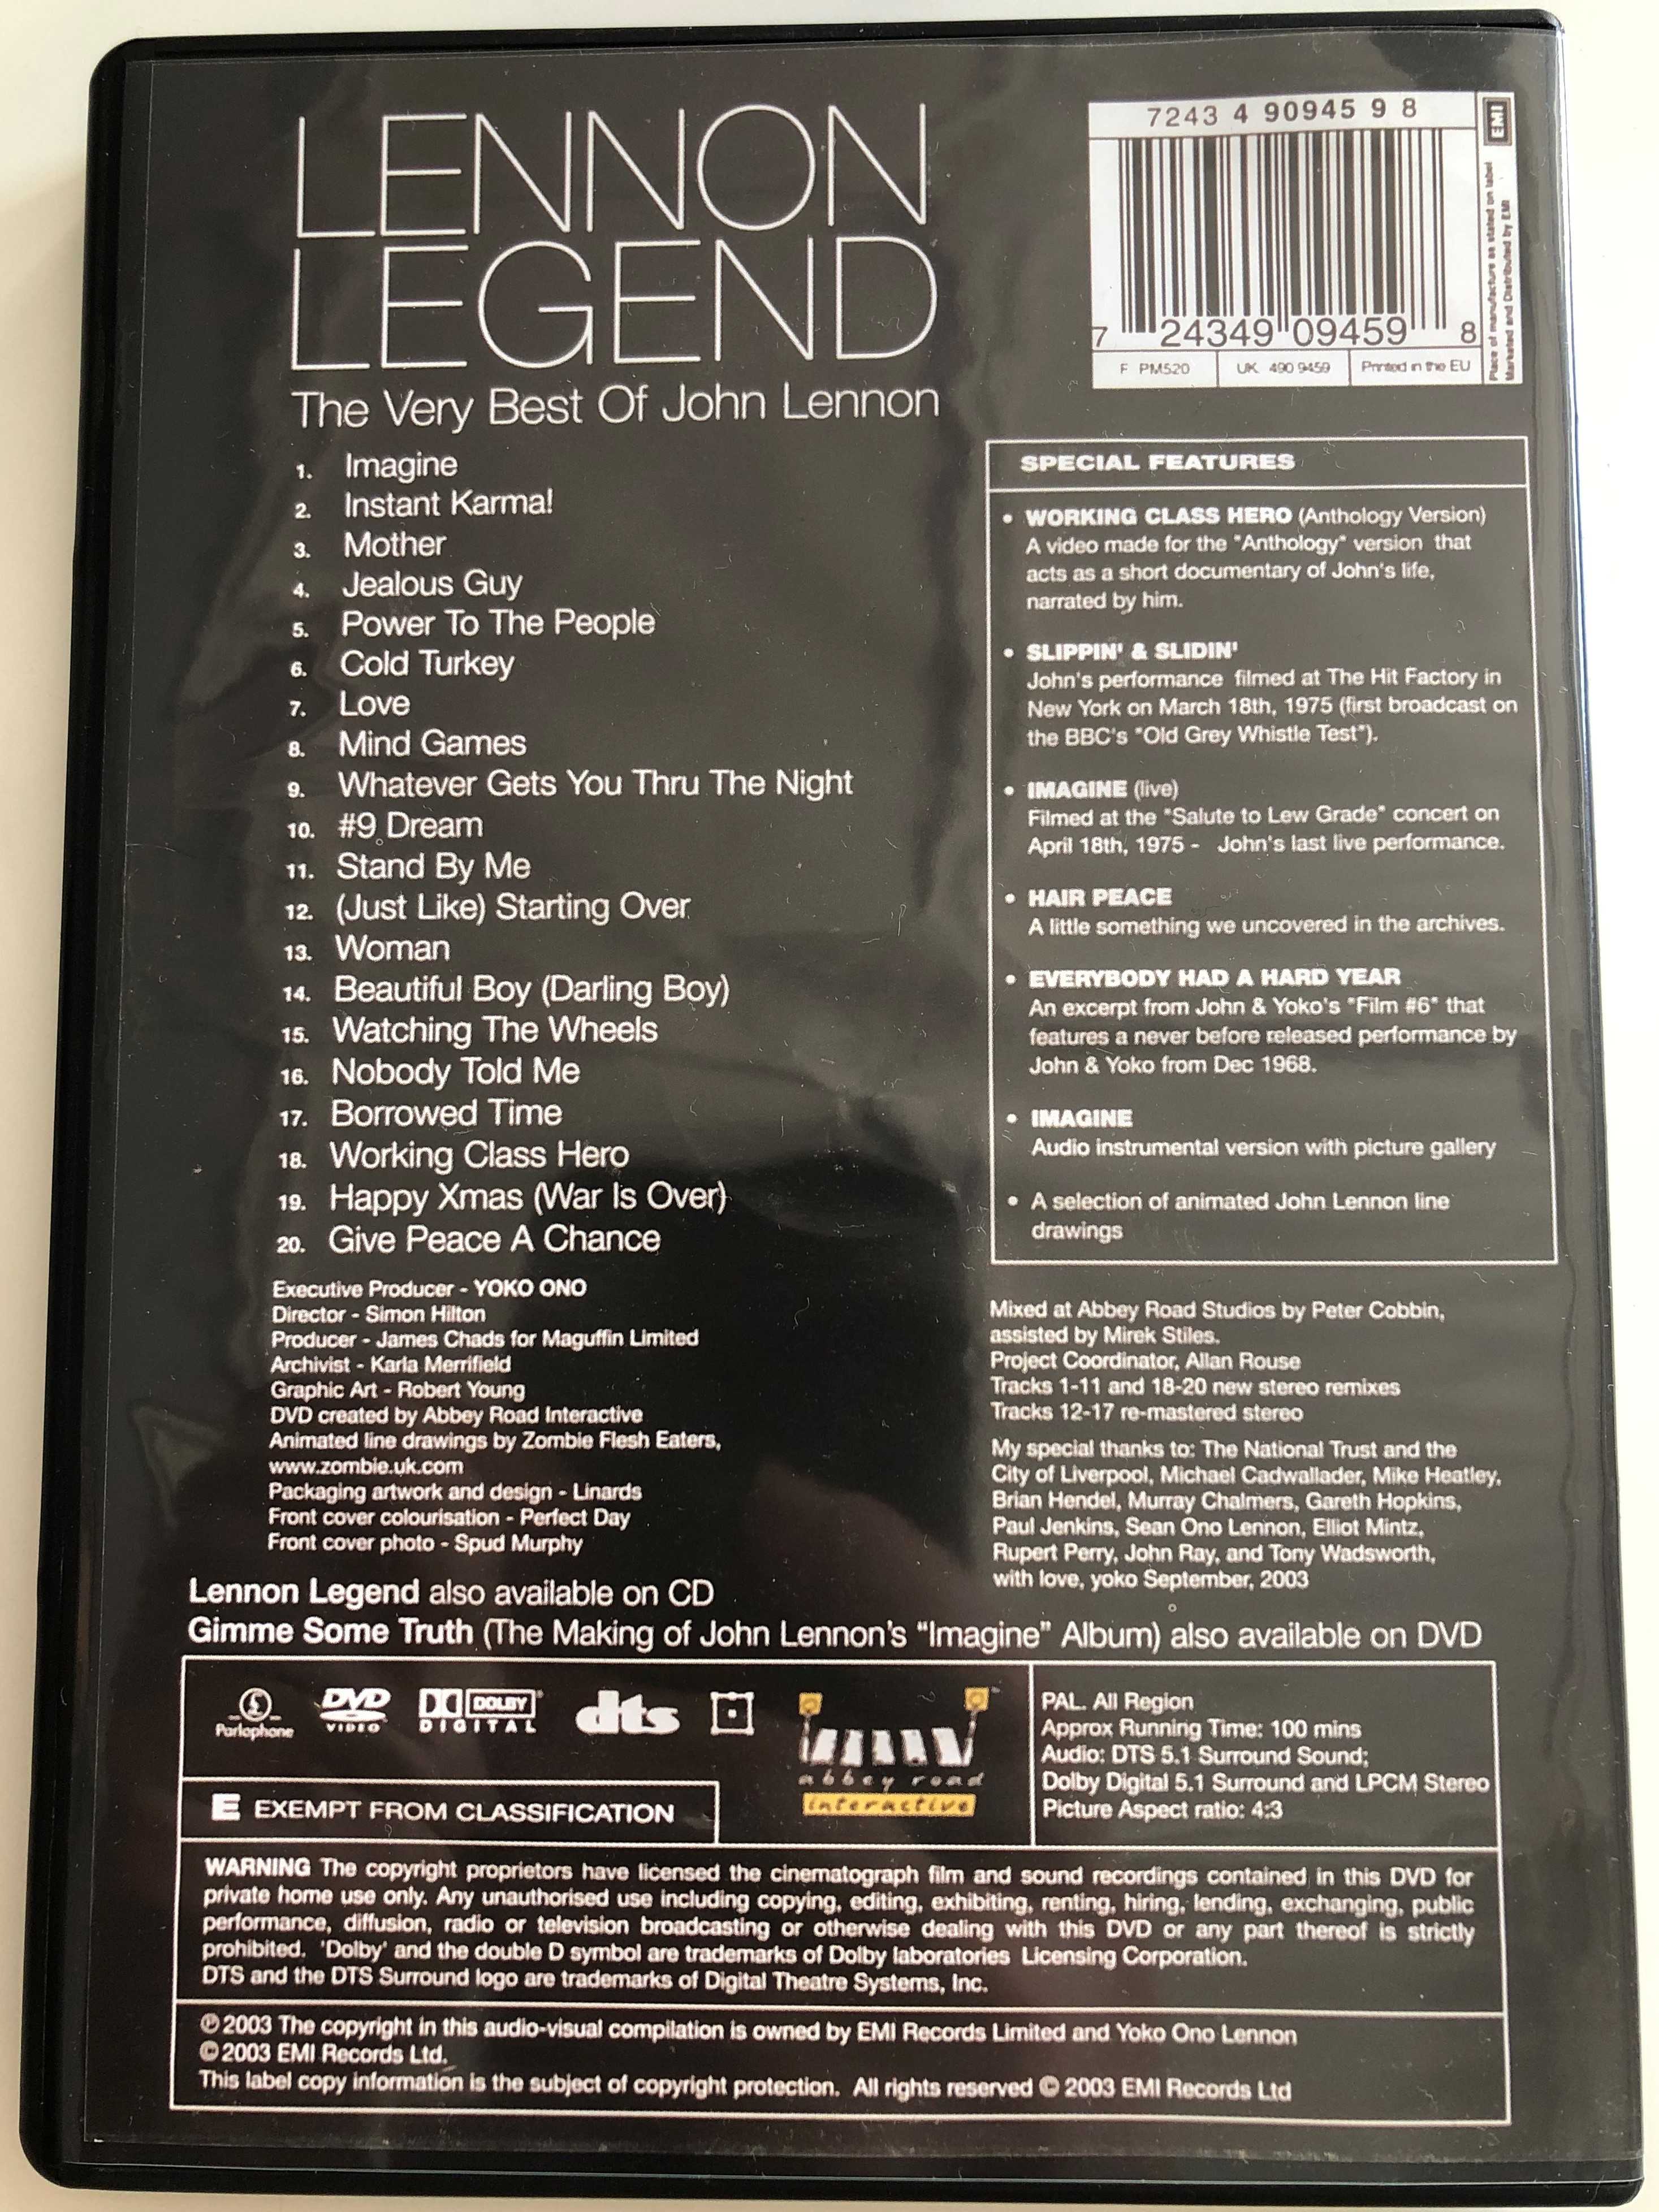 lennon-legend-dvd-2003-the-very-best-of-john-lennon-2.jpg